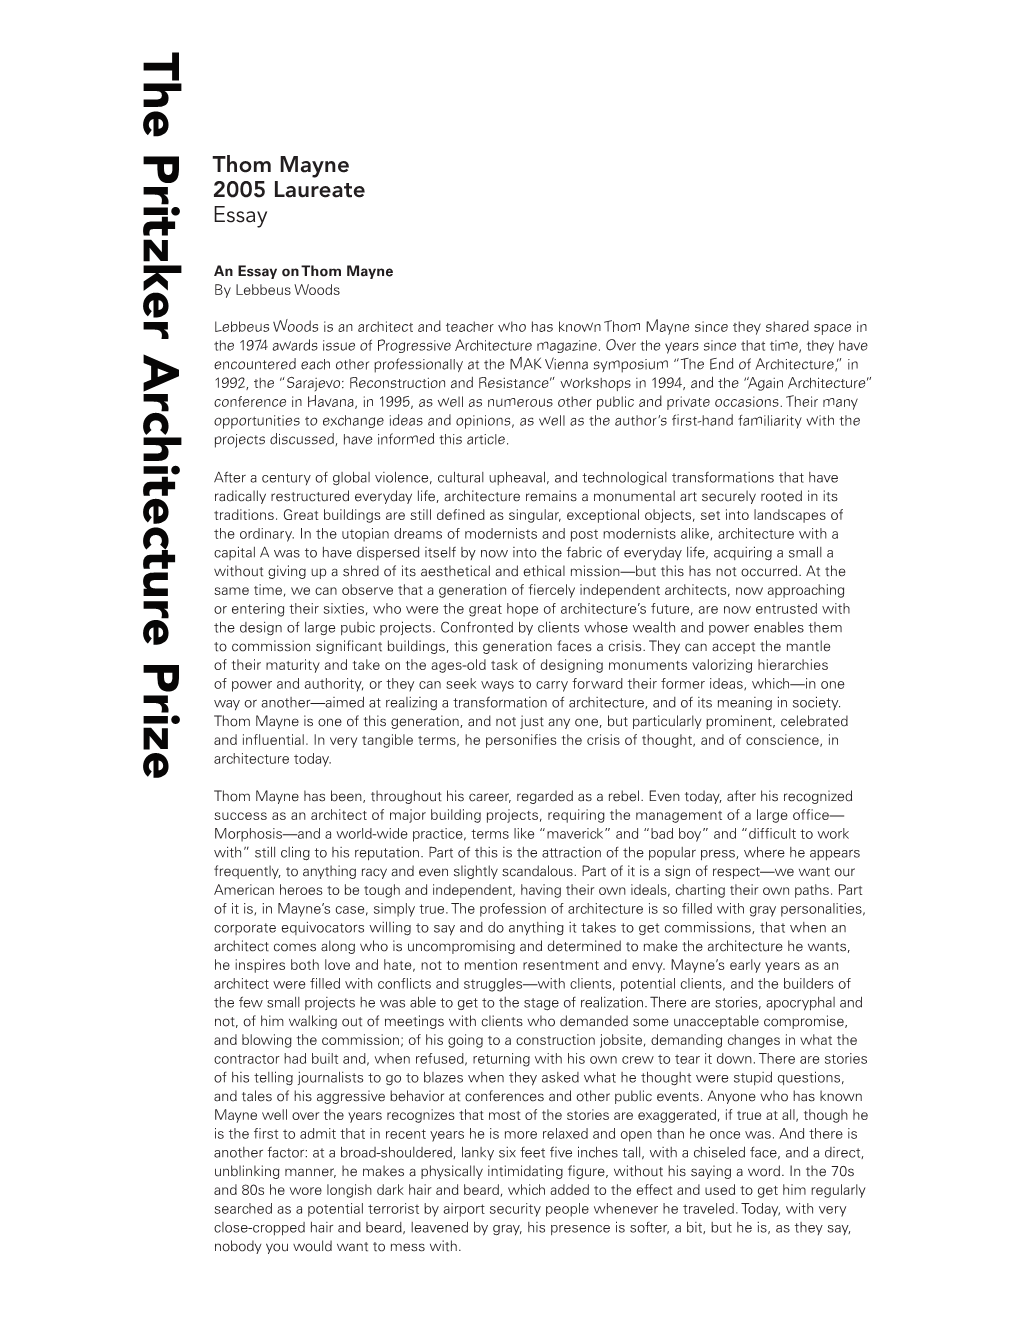 Thom Mayne 2005 Laureate Essay